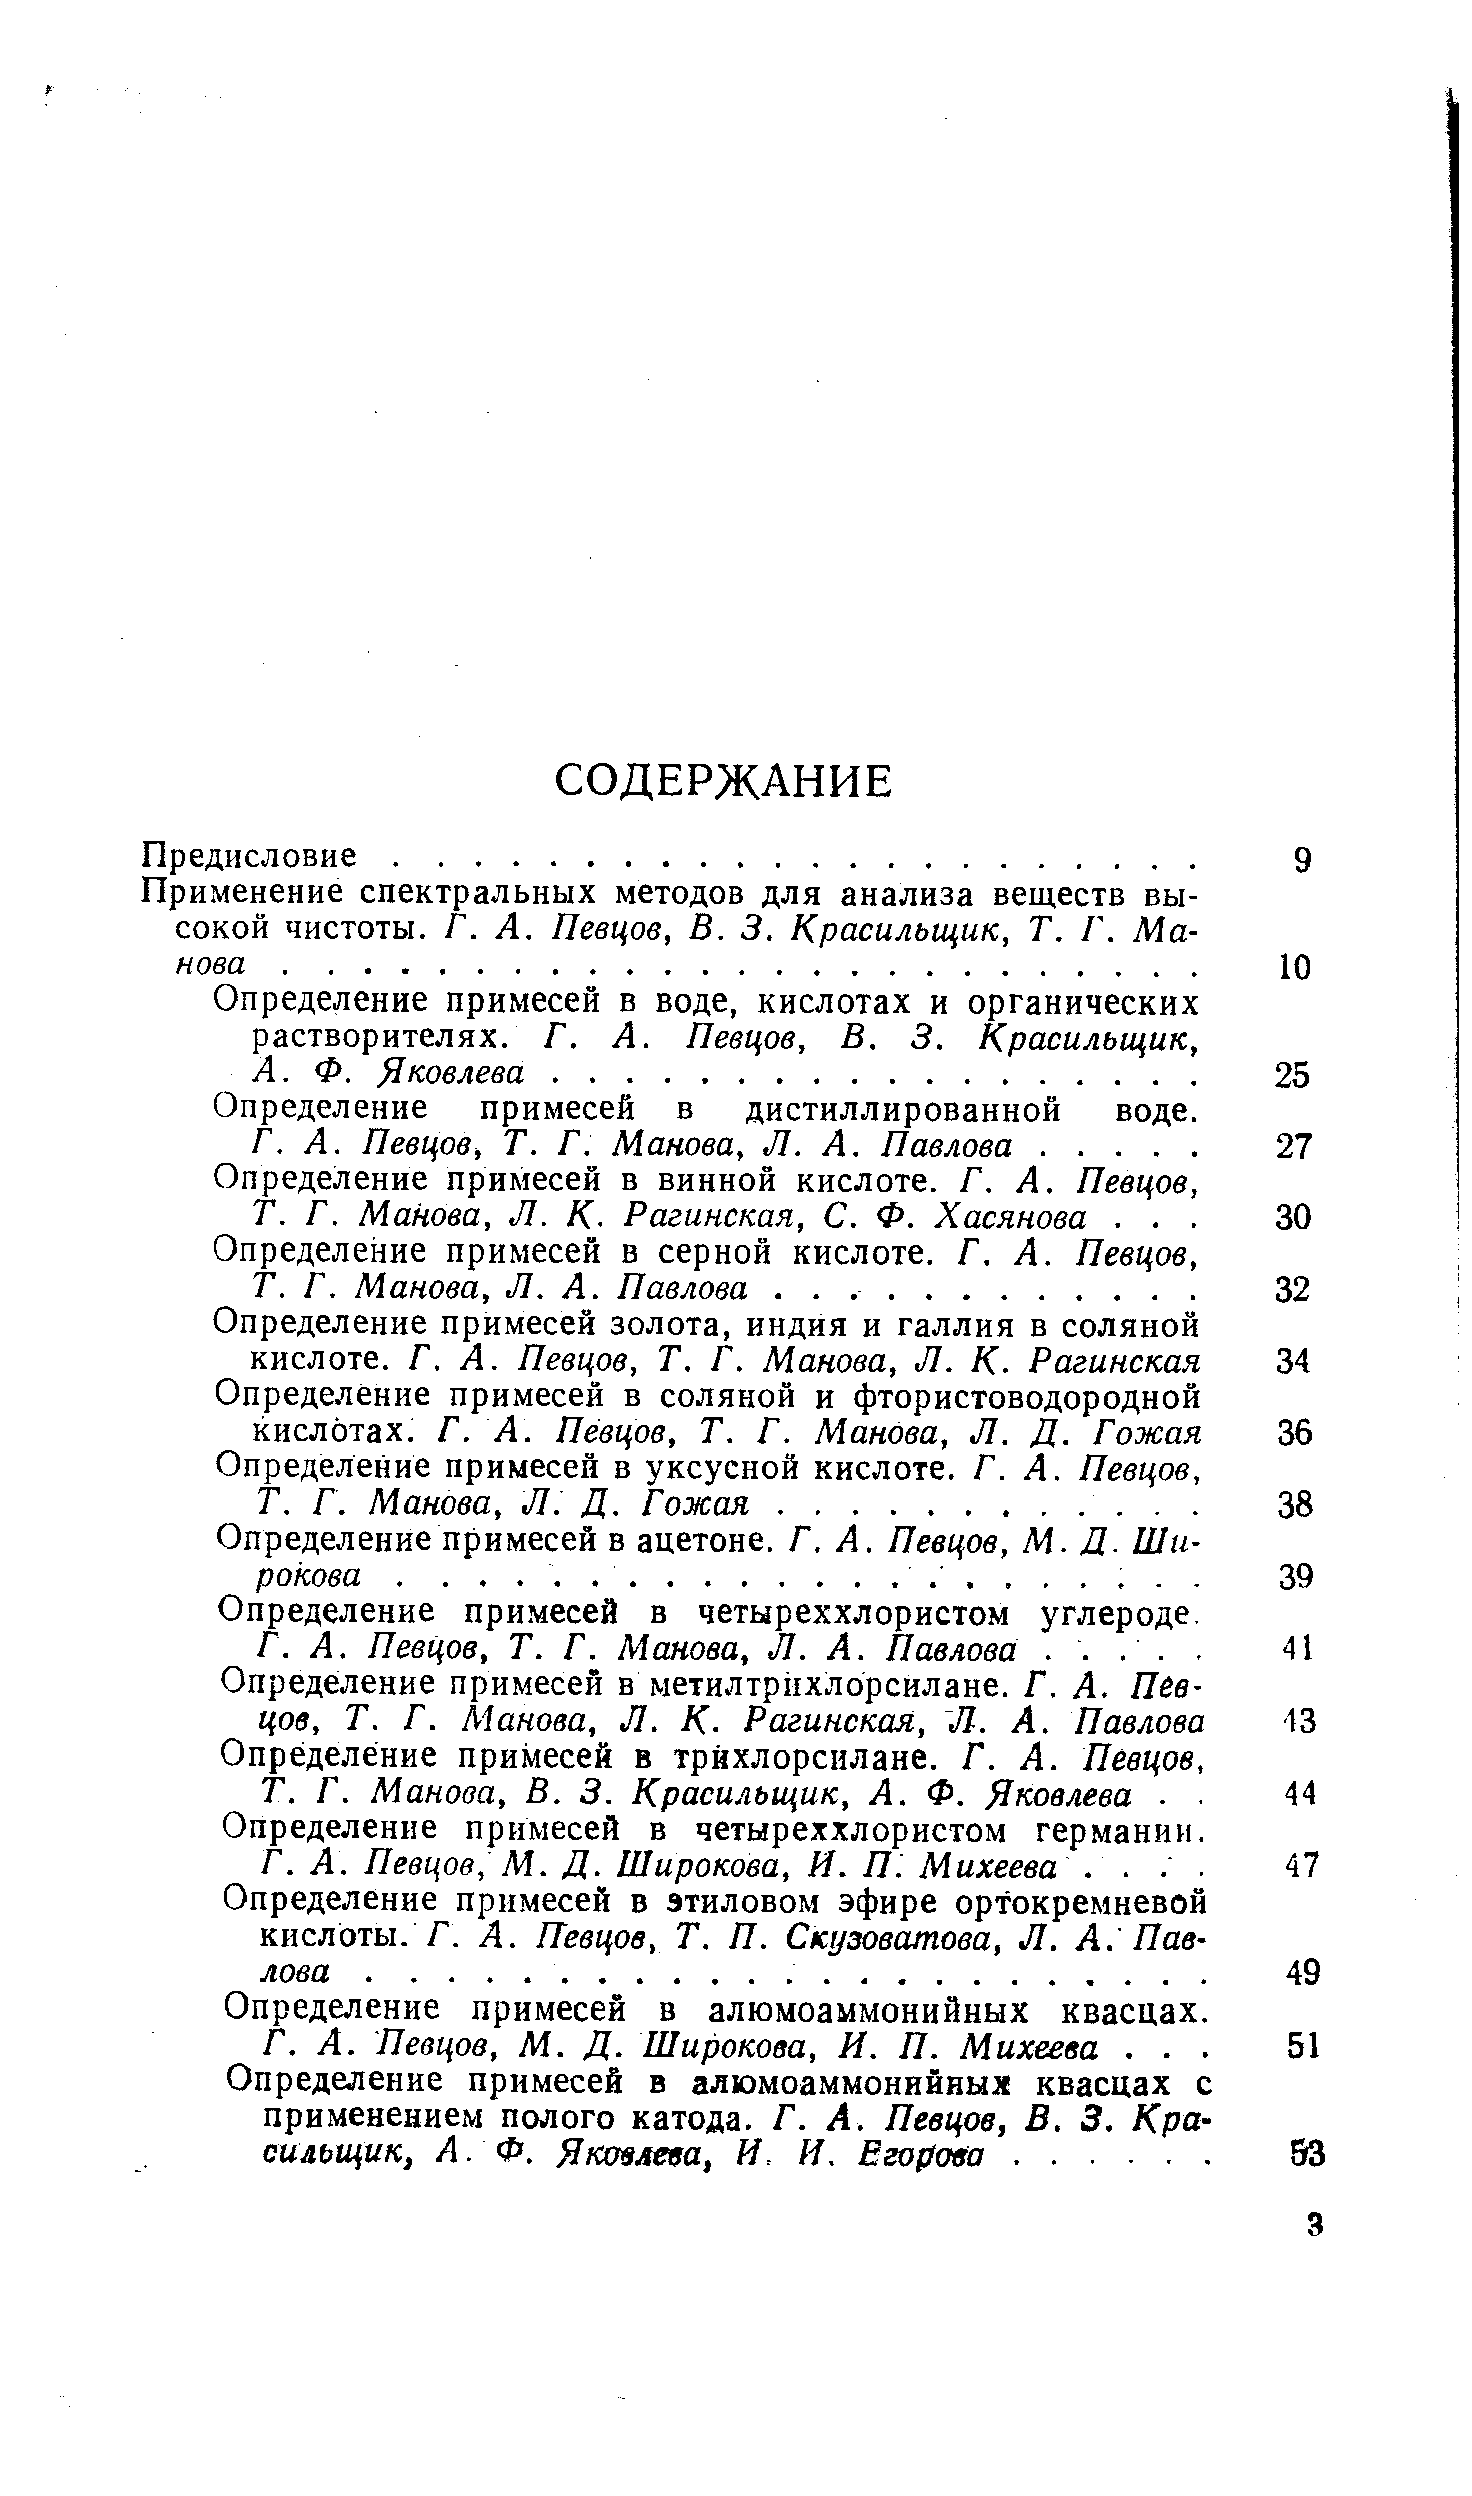 Манова, В. 3. Красильщик, А. Ф. Яковлева 44 Определение примесей в четыреххлористом германии.